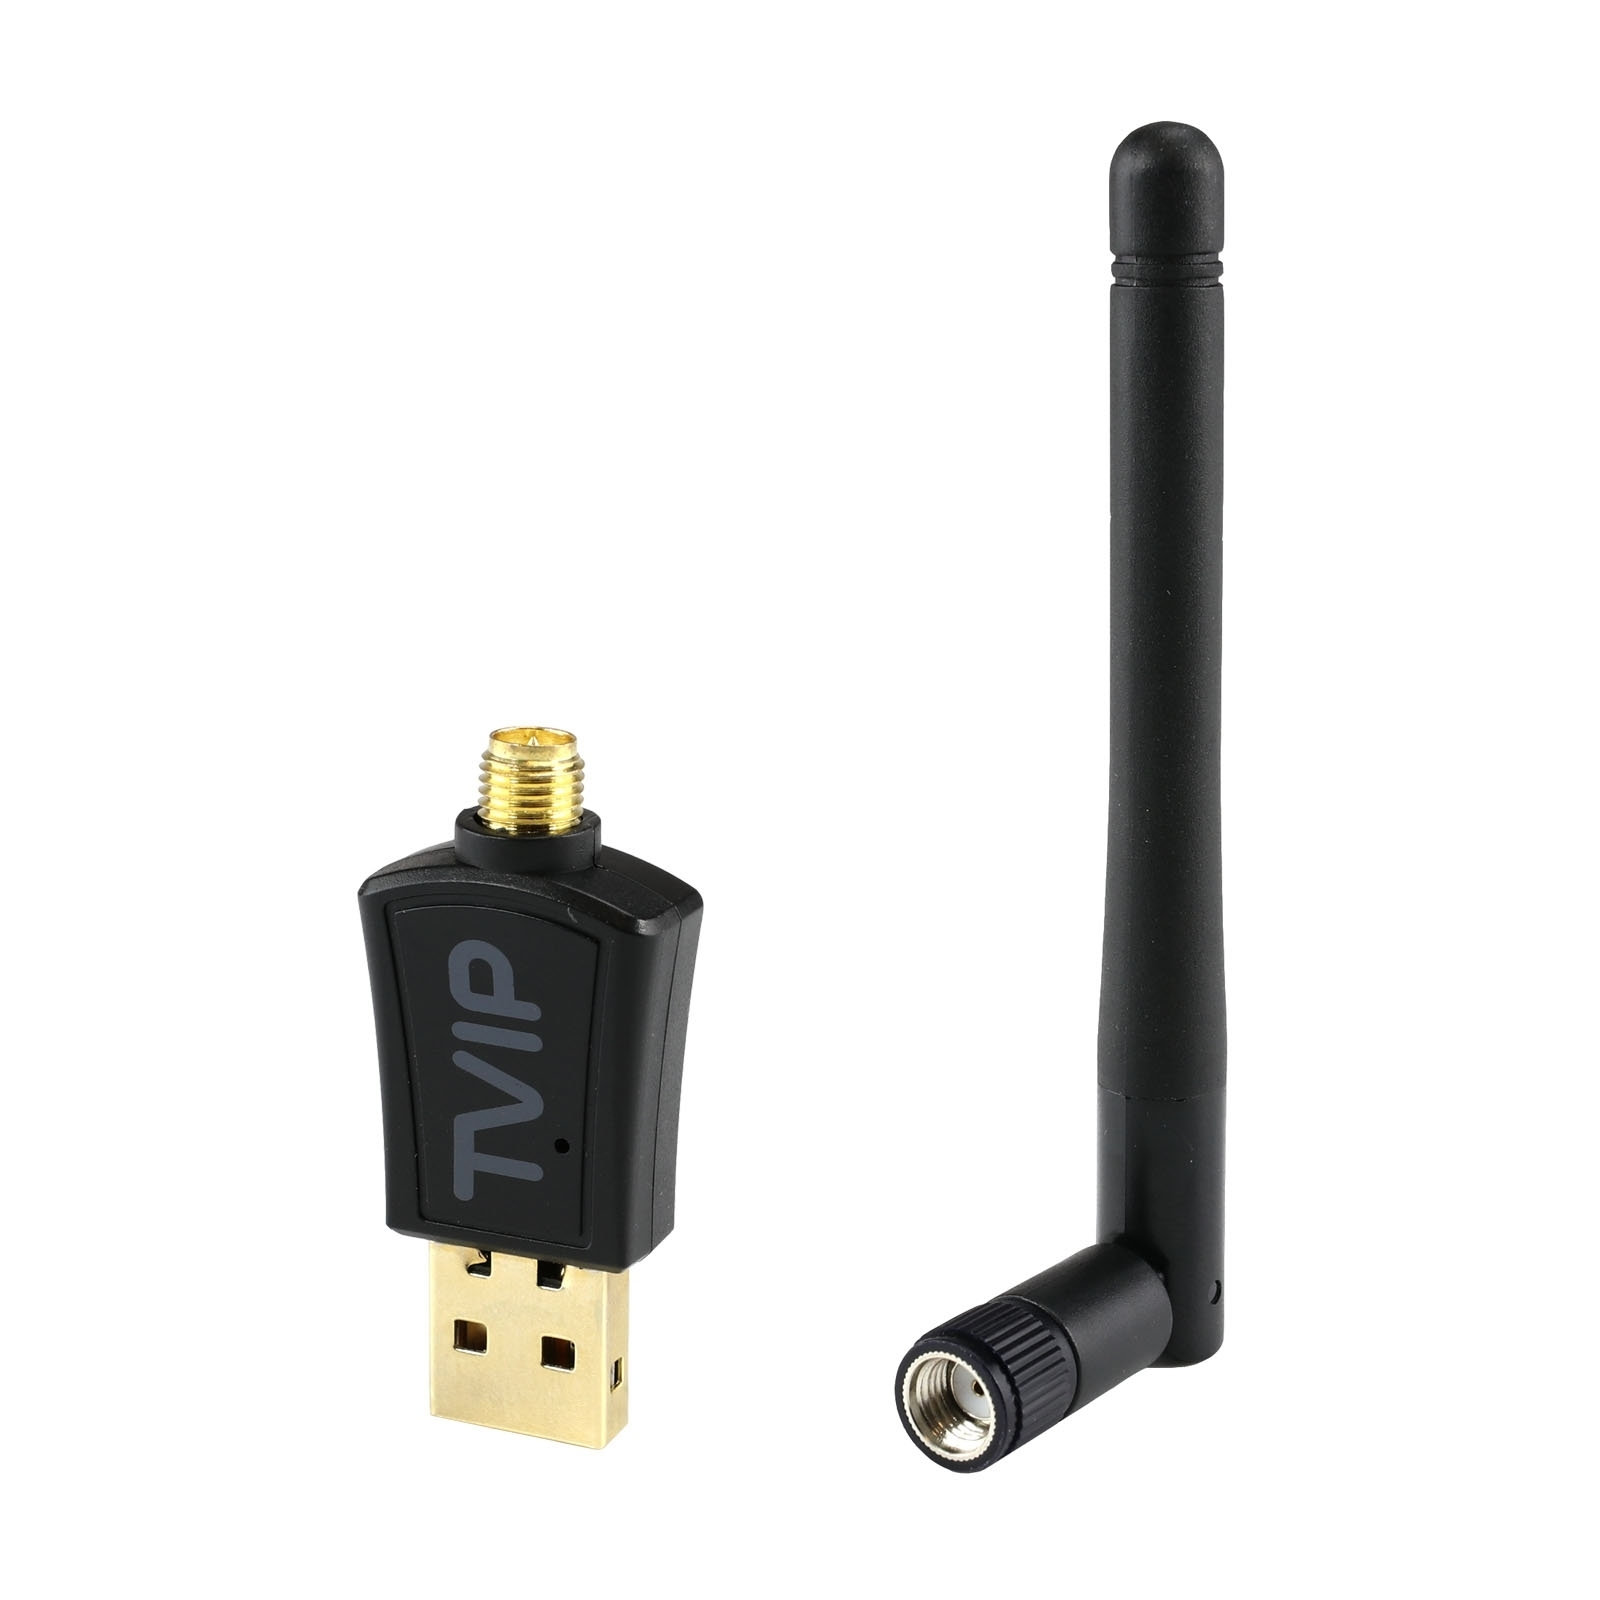 TVIP 600Mbit 2.4/5 GHz Stick Wlan mit Antenne